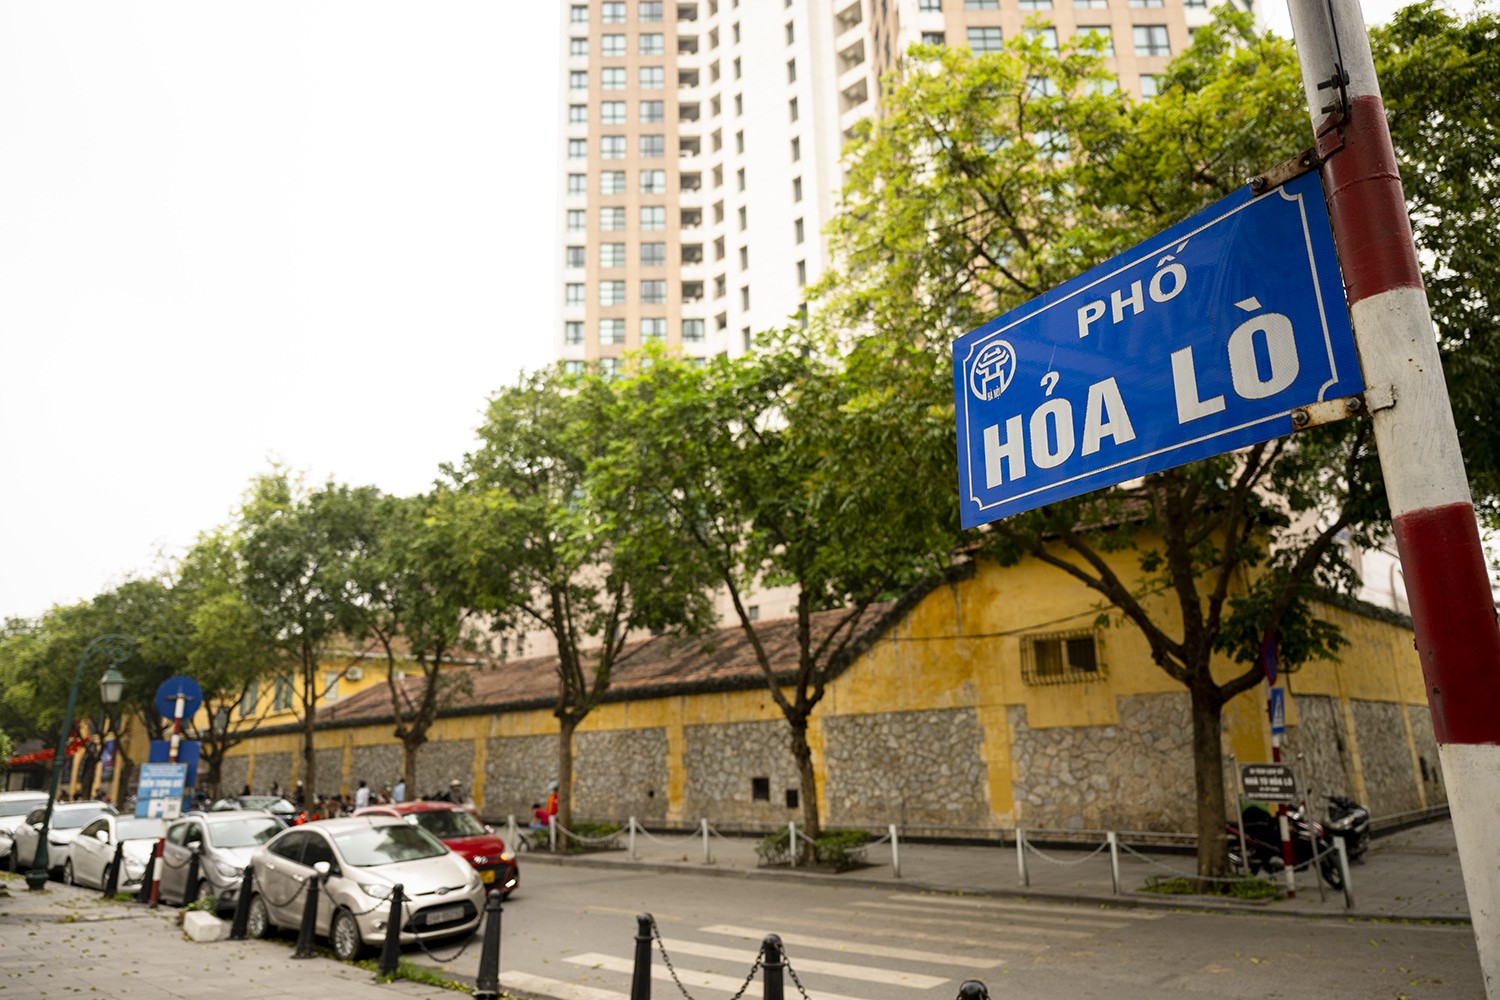 Phố Hỏa Lò là con phố nối từ phố Hai Bà Trưng đến phố Lý Thường Kiệt. Con phố&nbsp;dài 165m này có một điểm khá đặc biệt, đó là chỉ có 1 địa chỉ duy nhất.